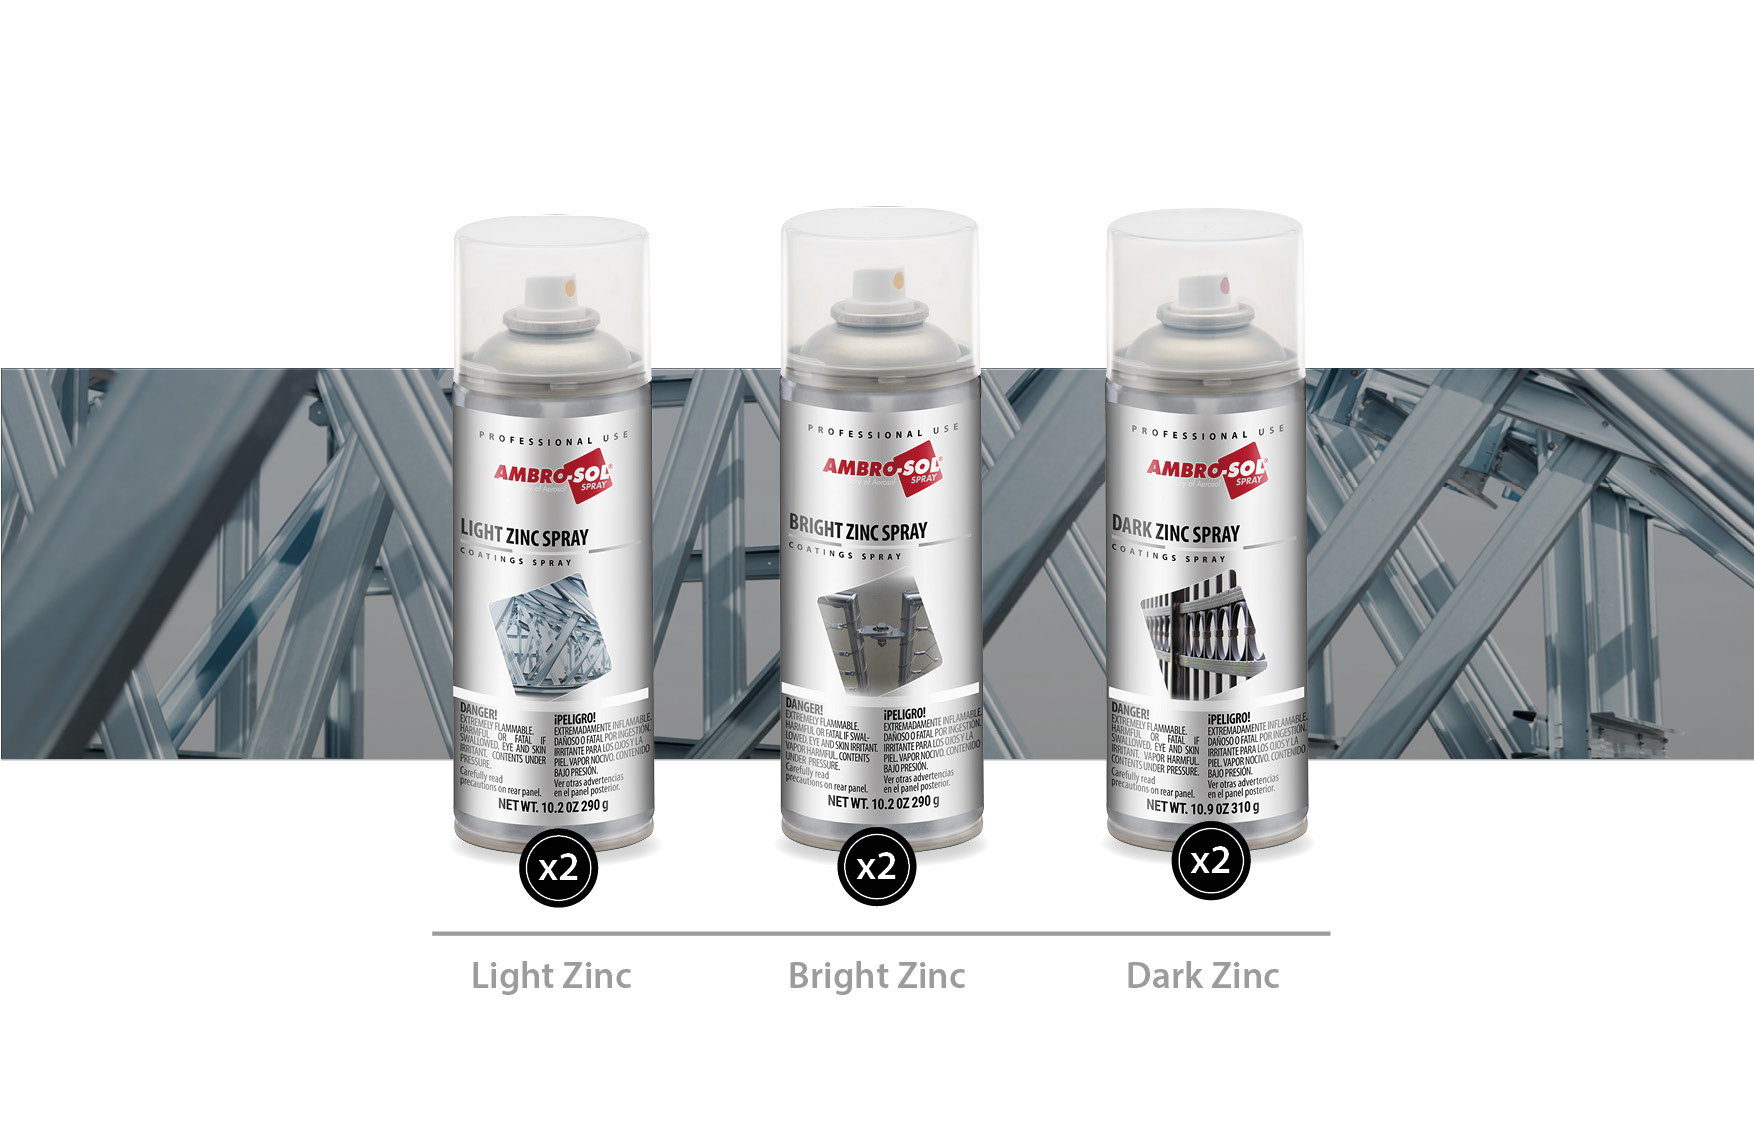 Zinc Spray Variety Pack, Light Zinc, Bright Zinc, Dark Zinc